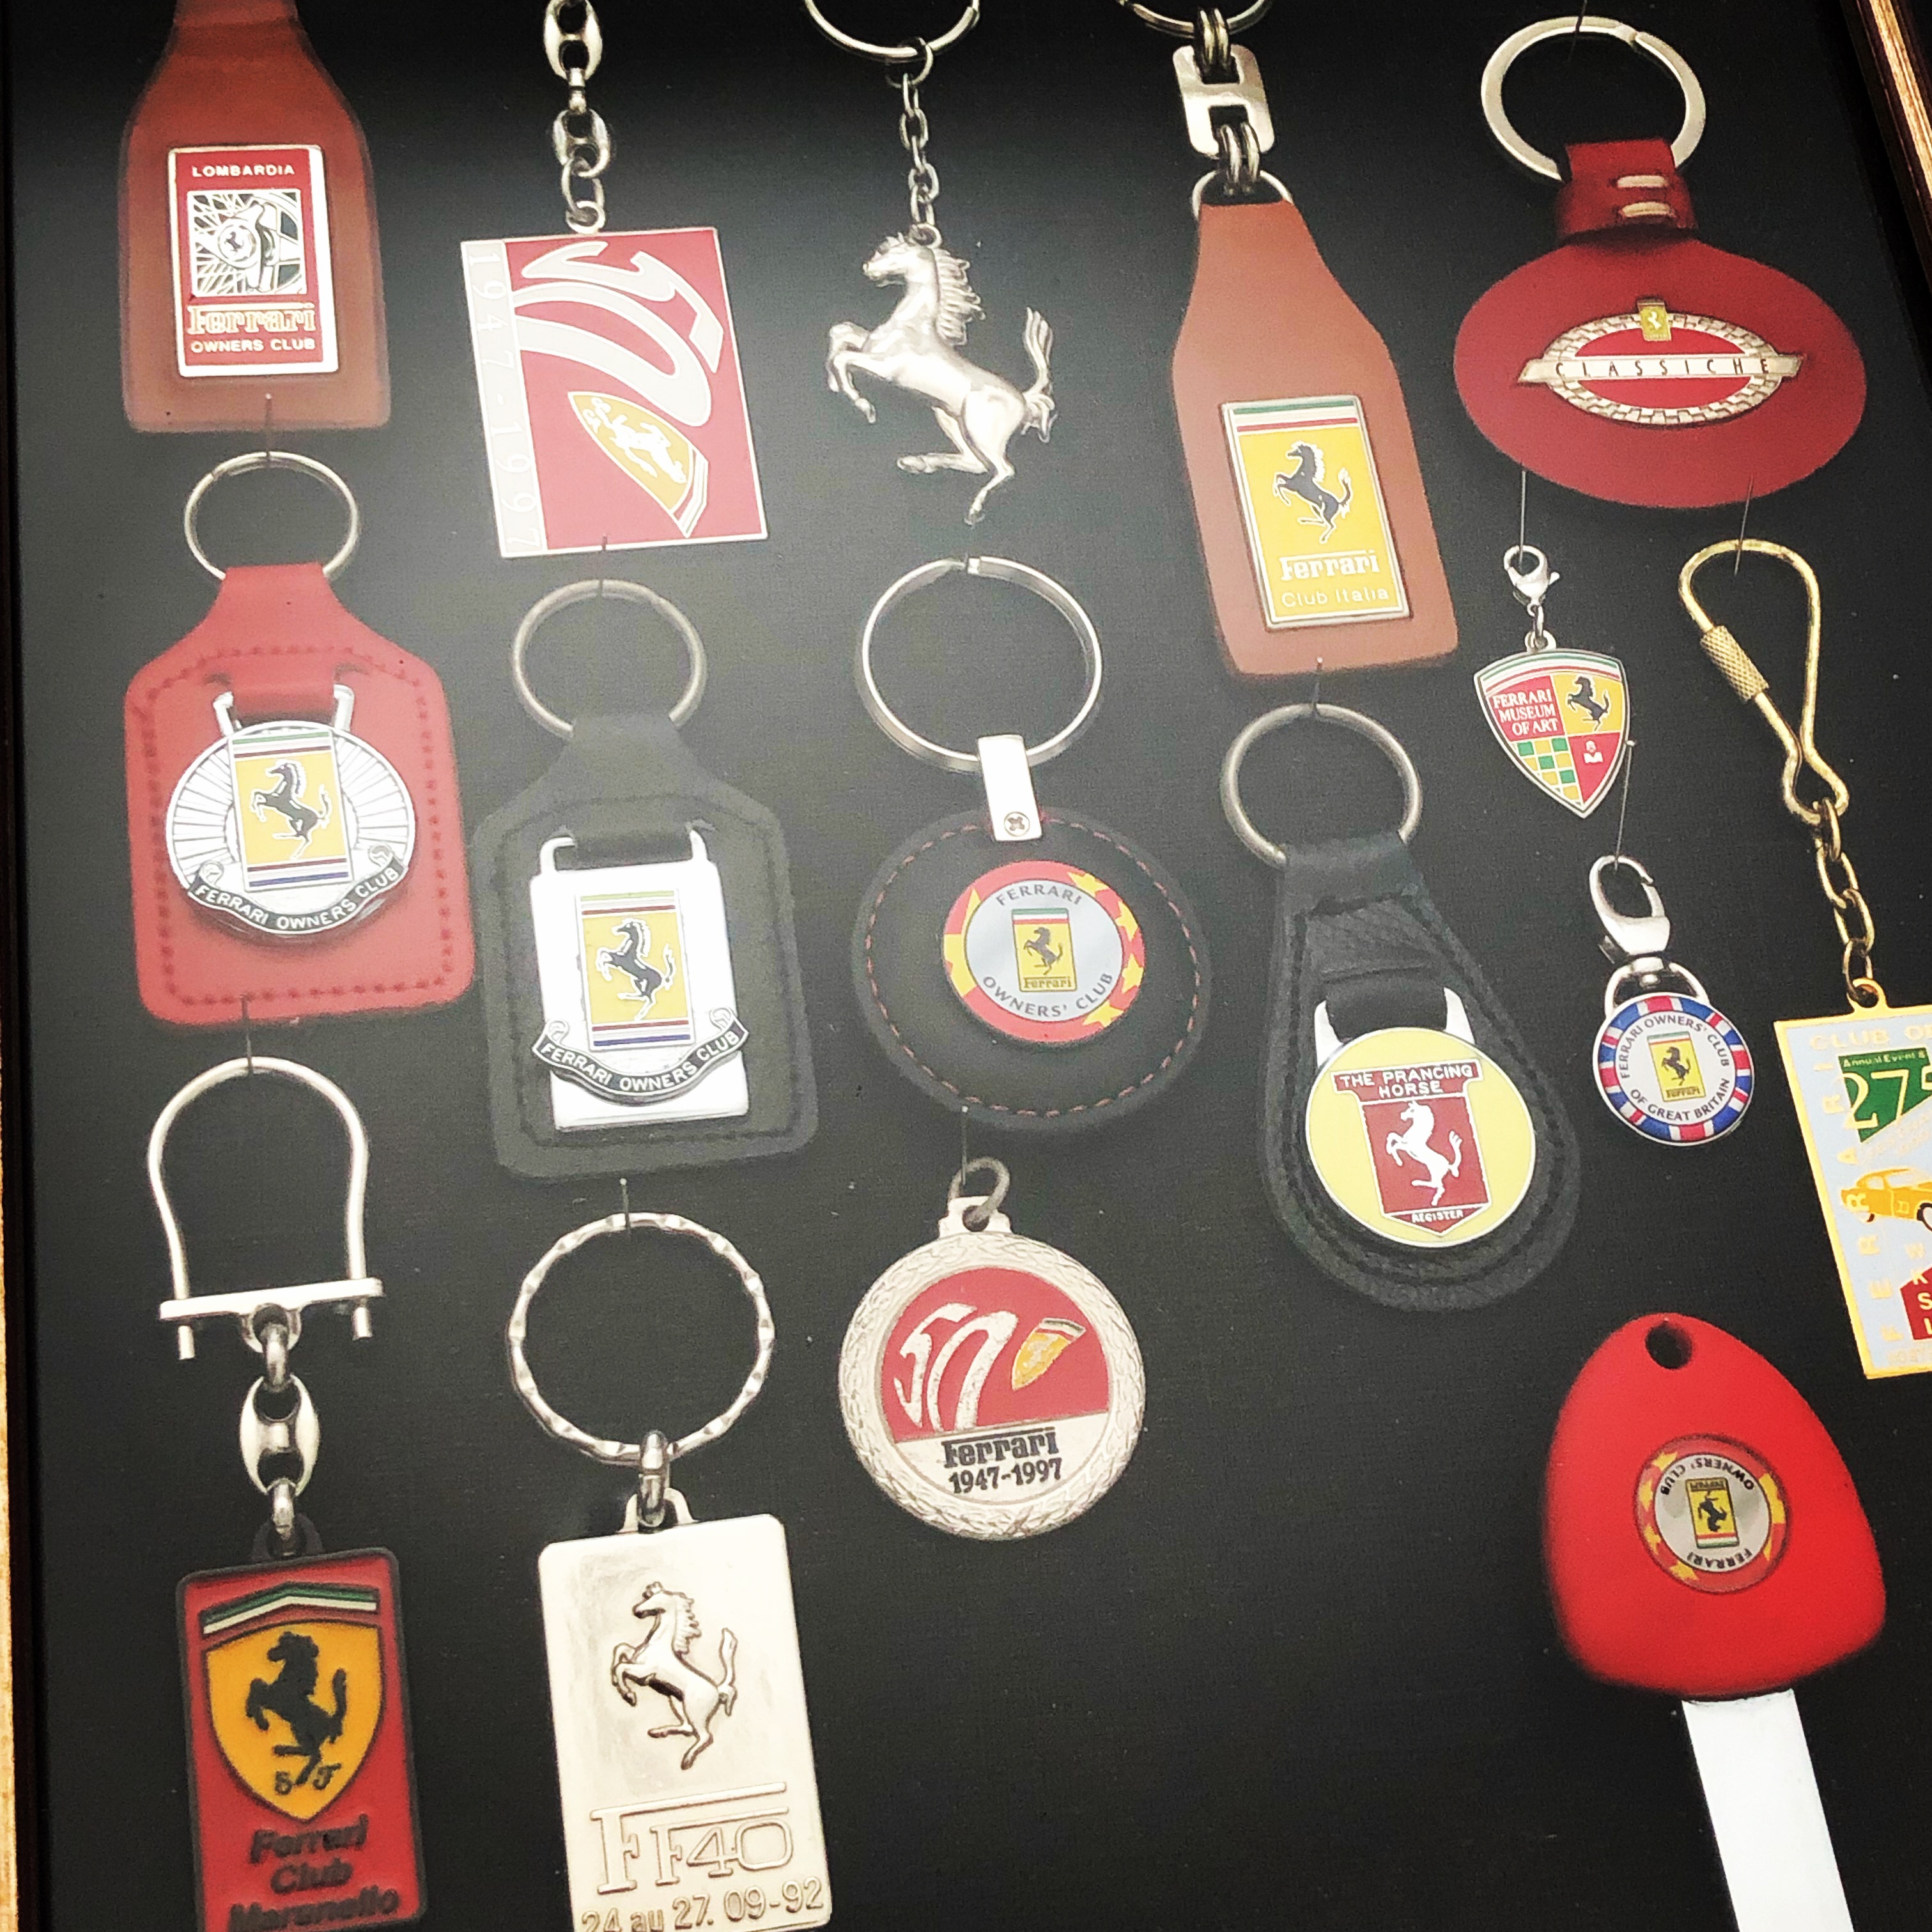 Porte-clés Ferrari